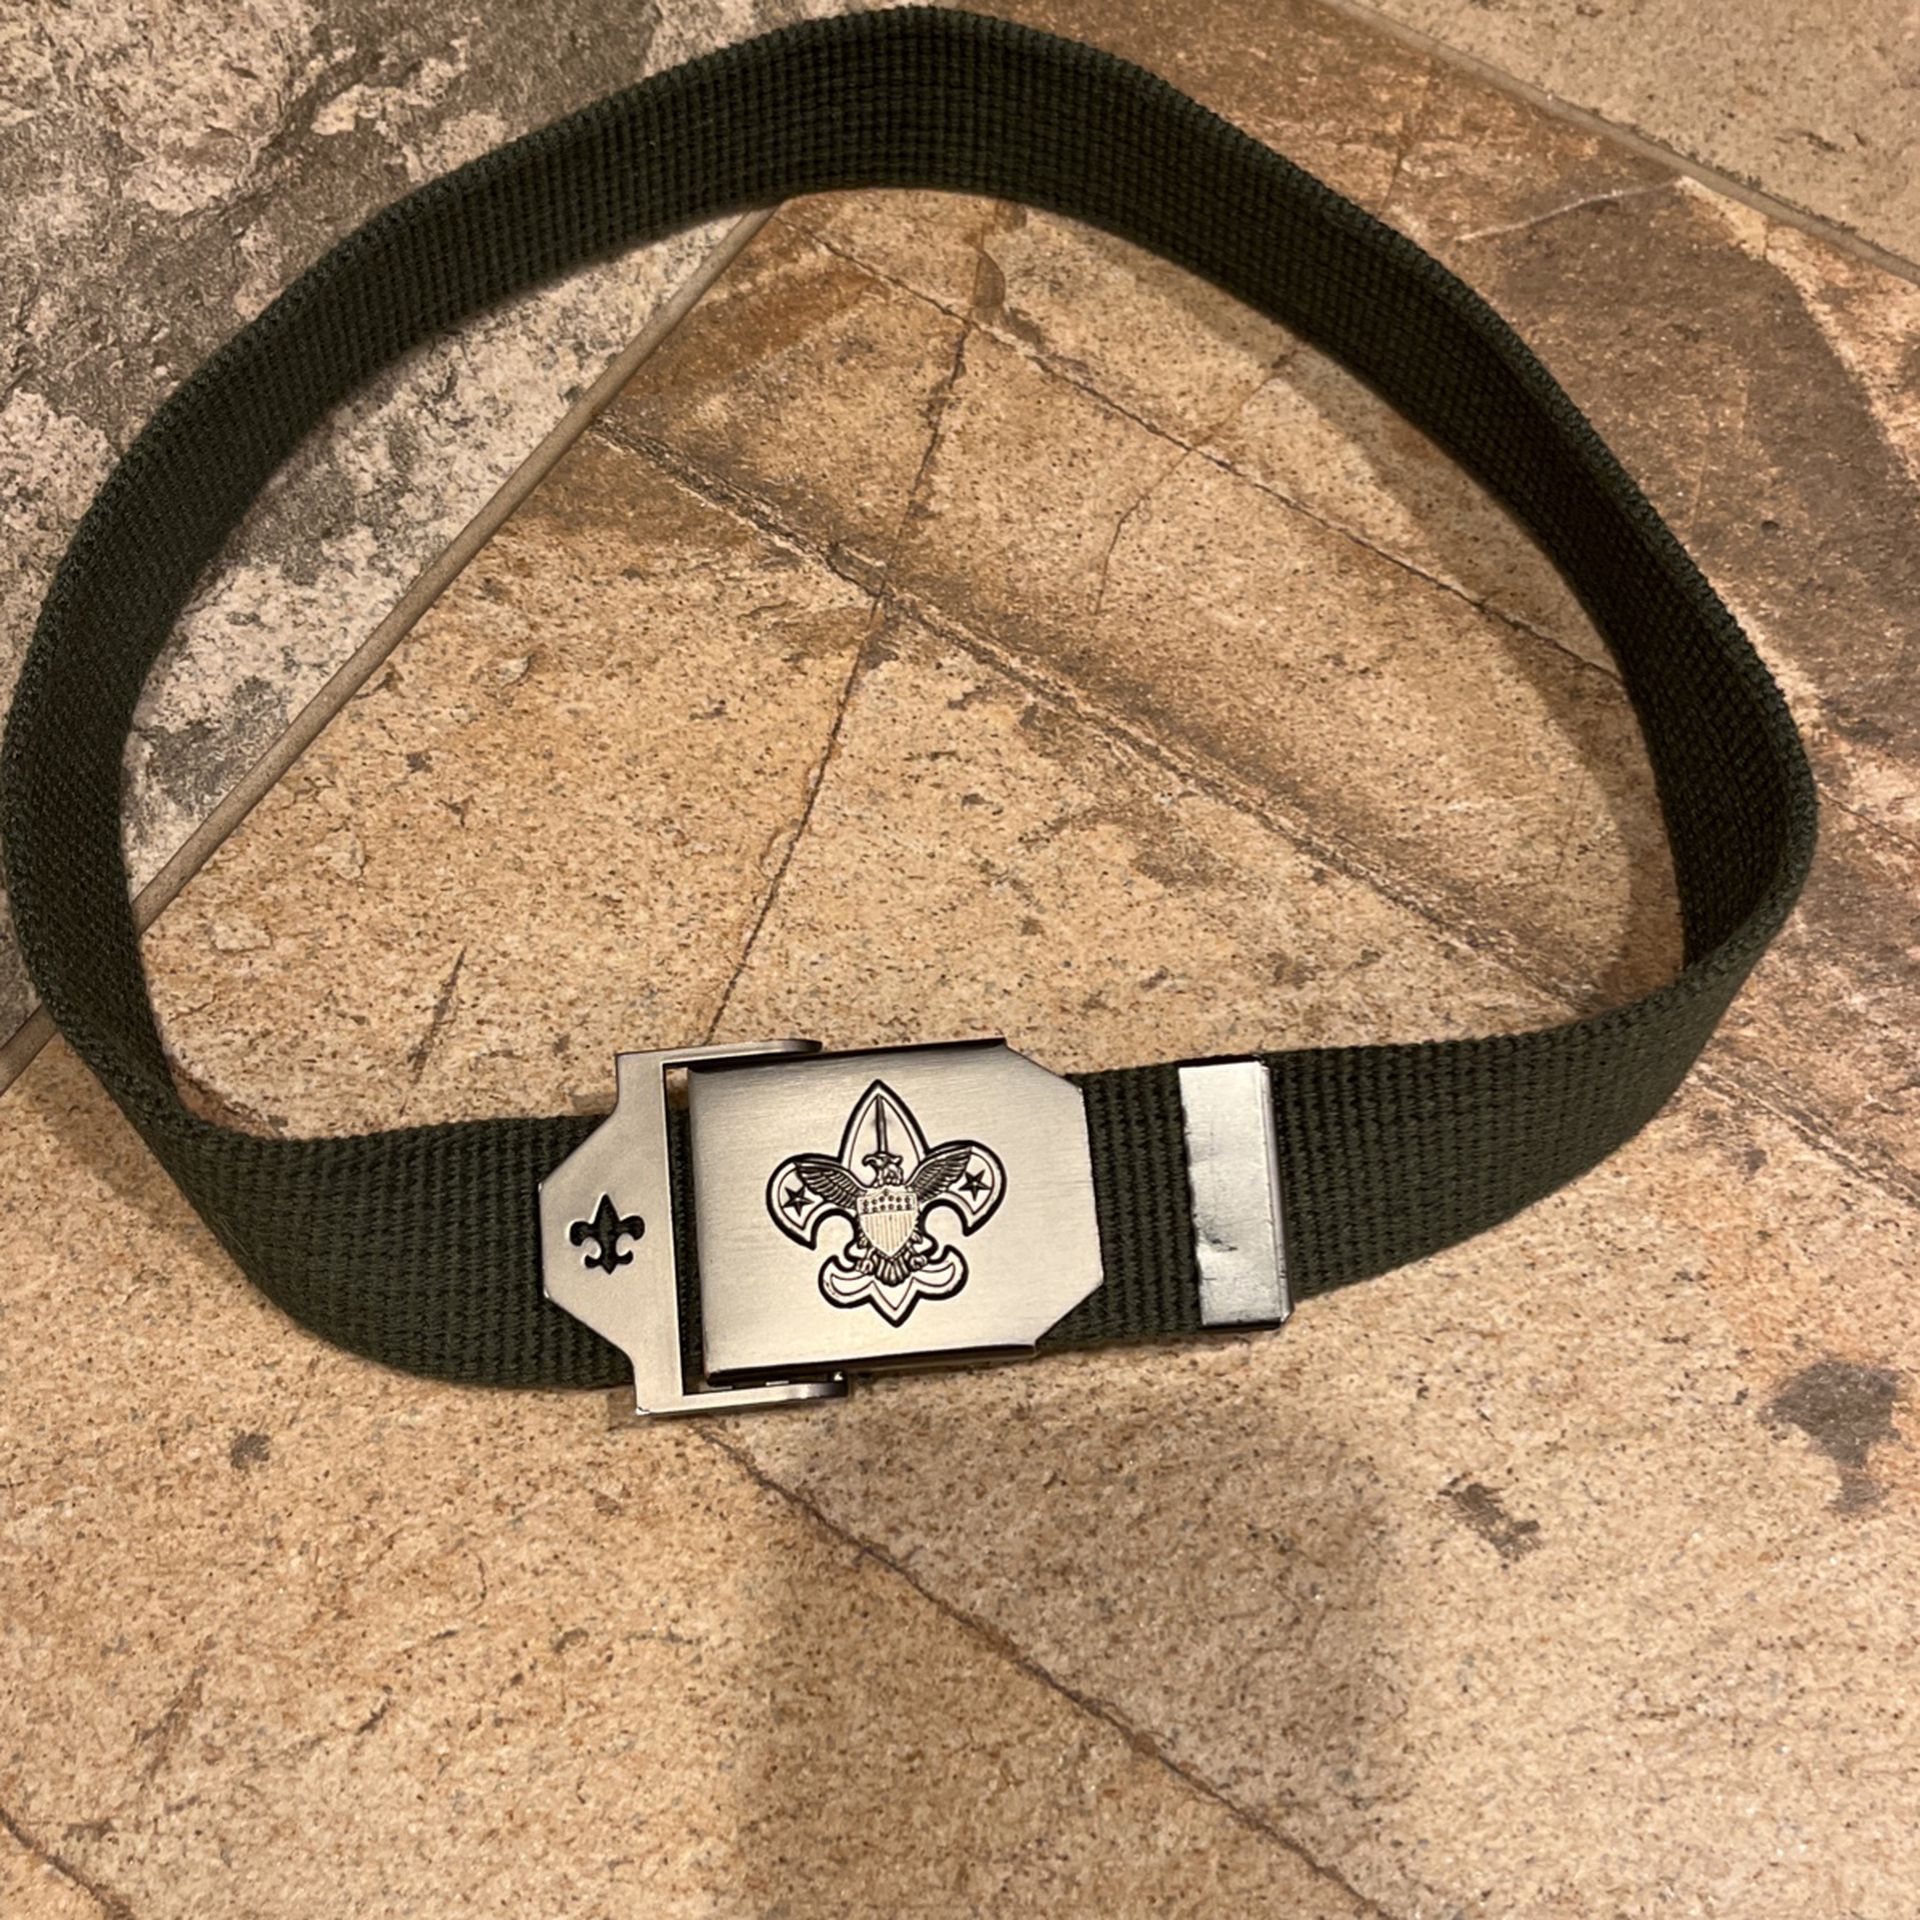 Official Boy Scout Belt - Boy Med  Size  33 “